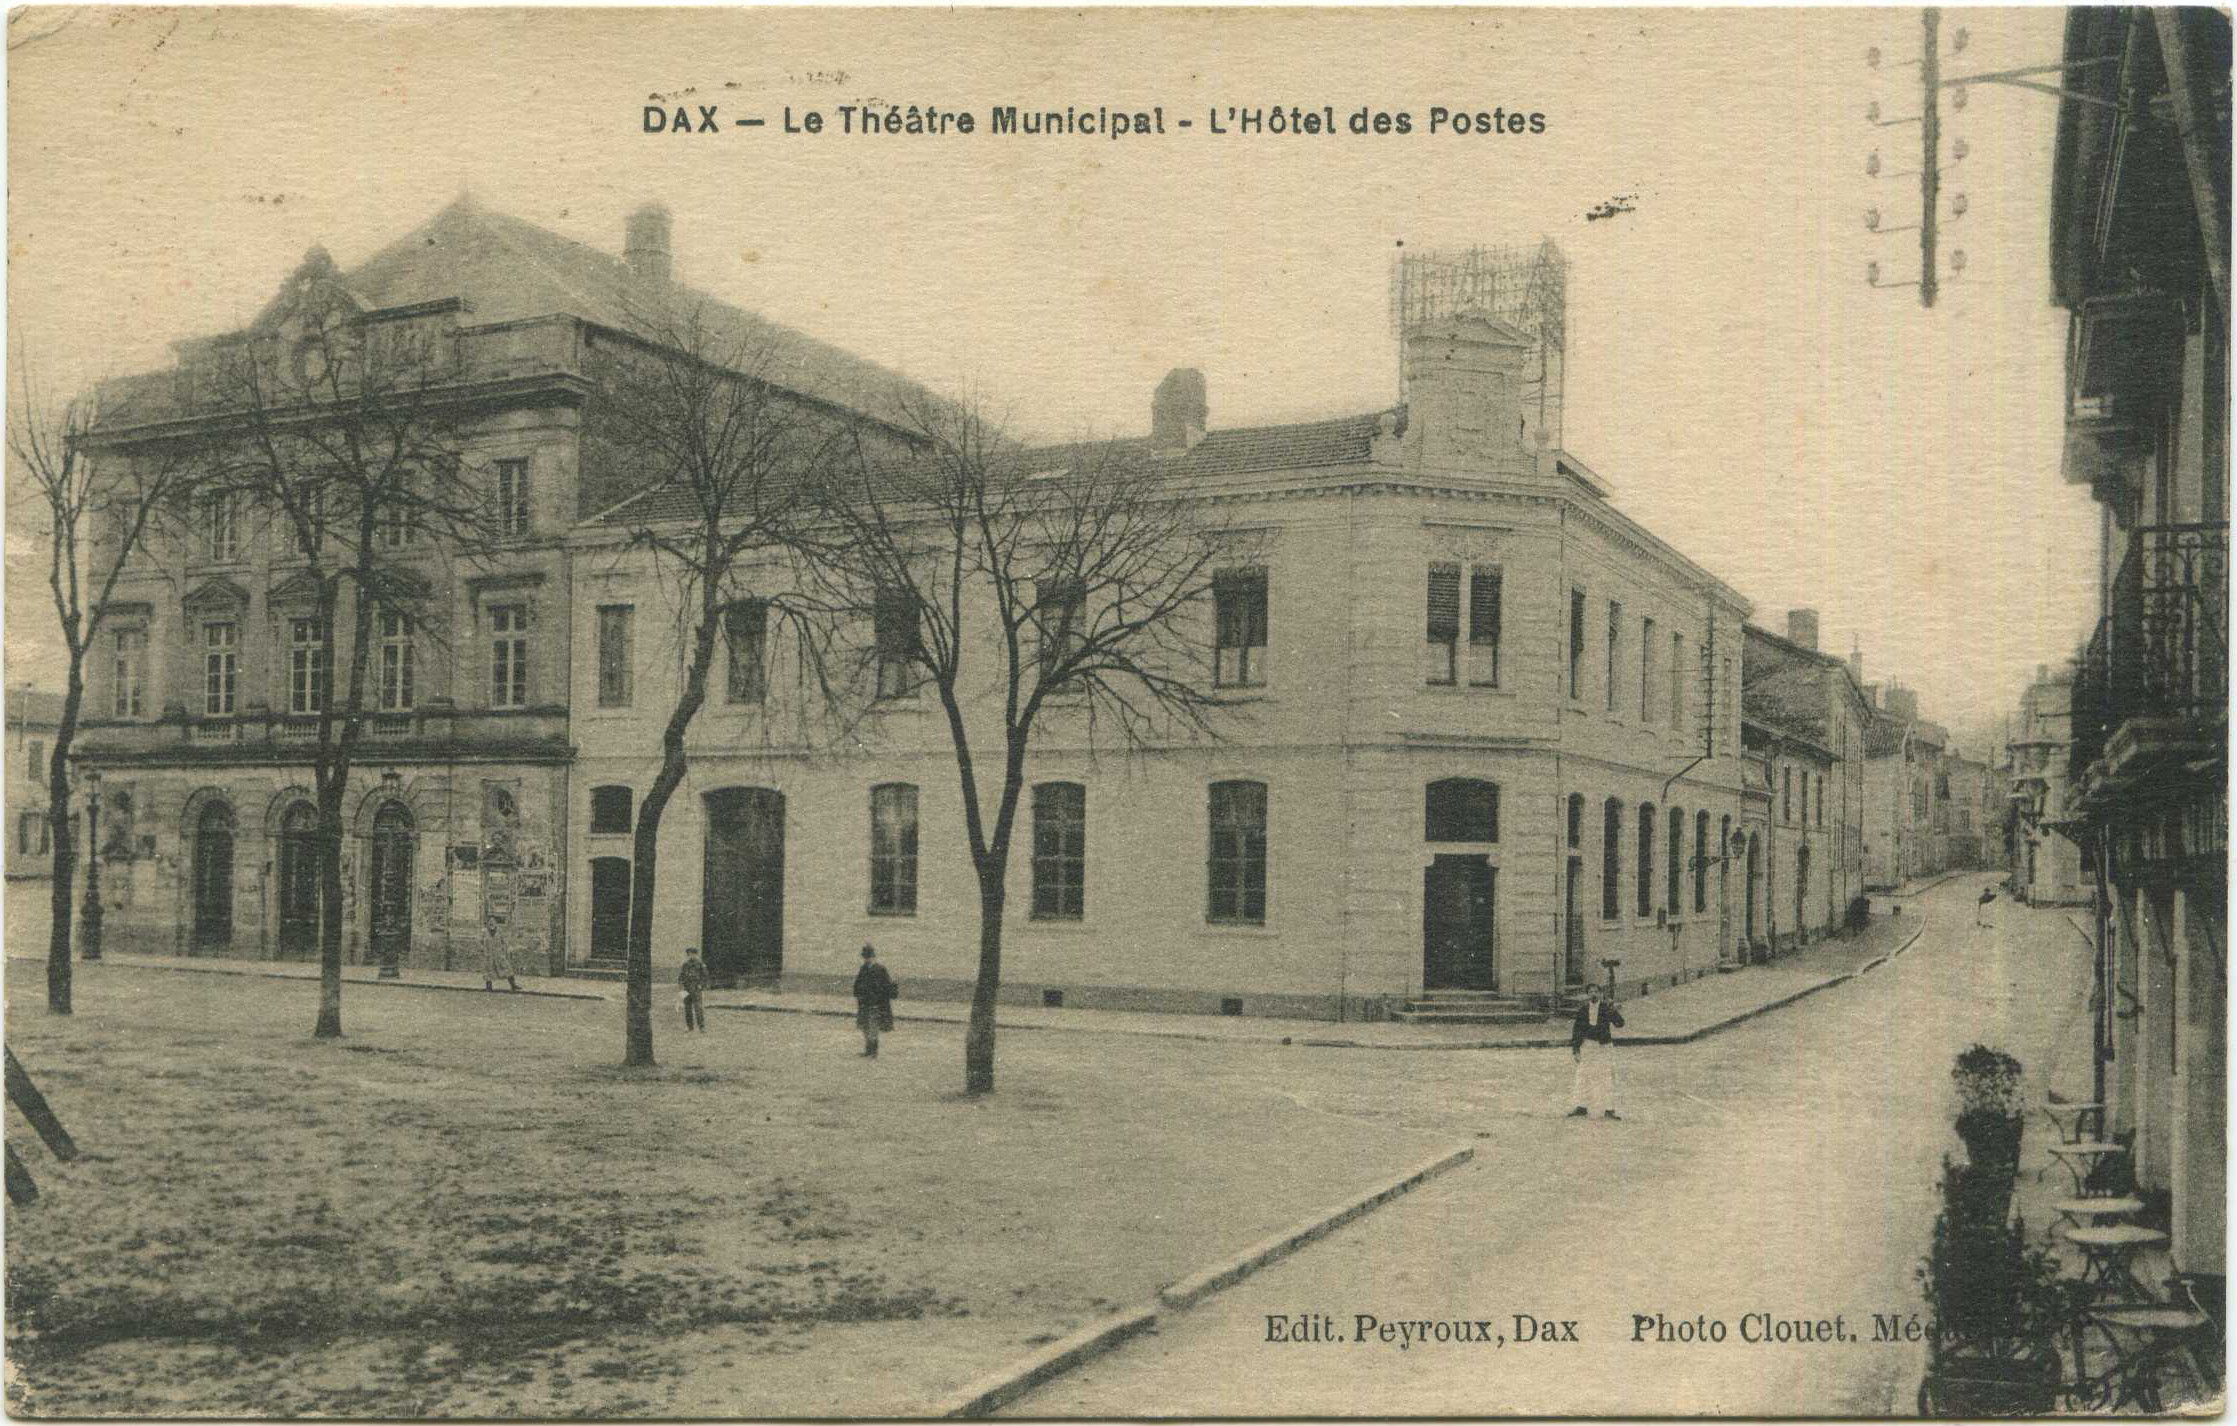 Dax - Le Théâtre Municipal - L'Hôtel des Postes